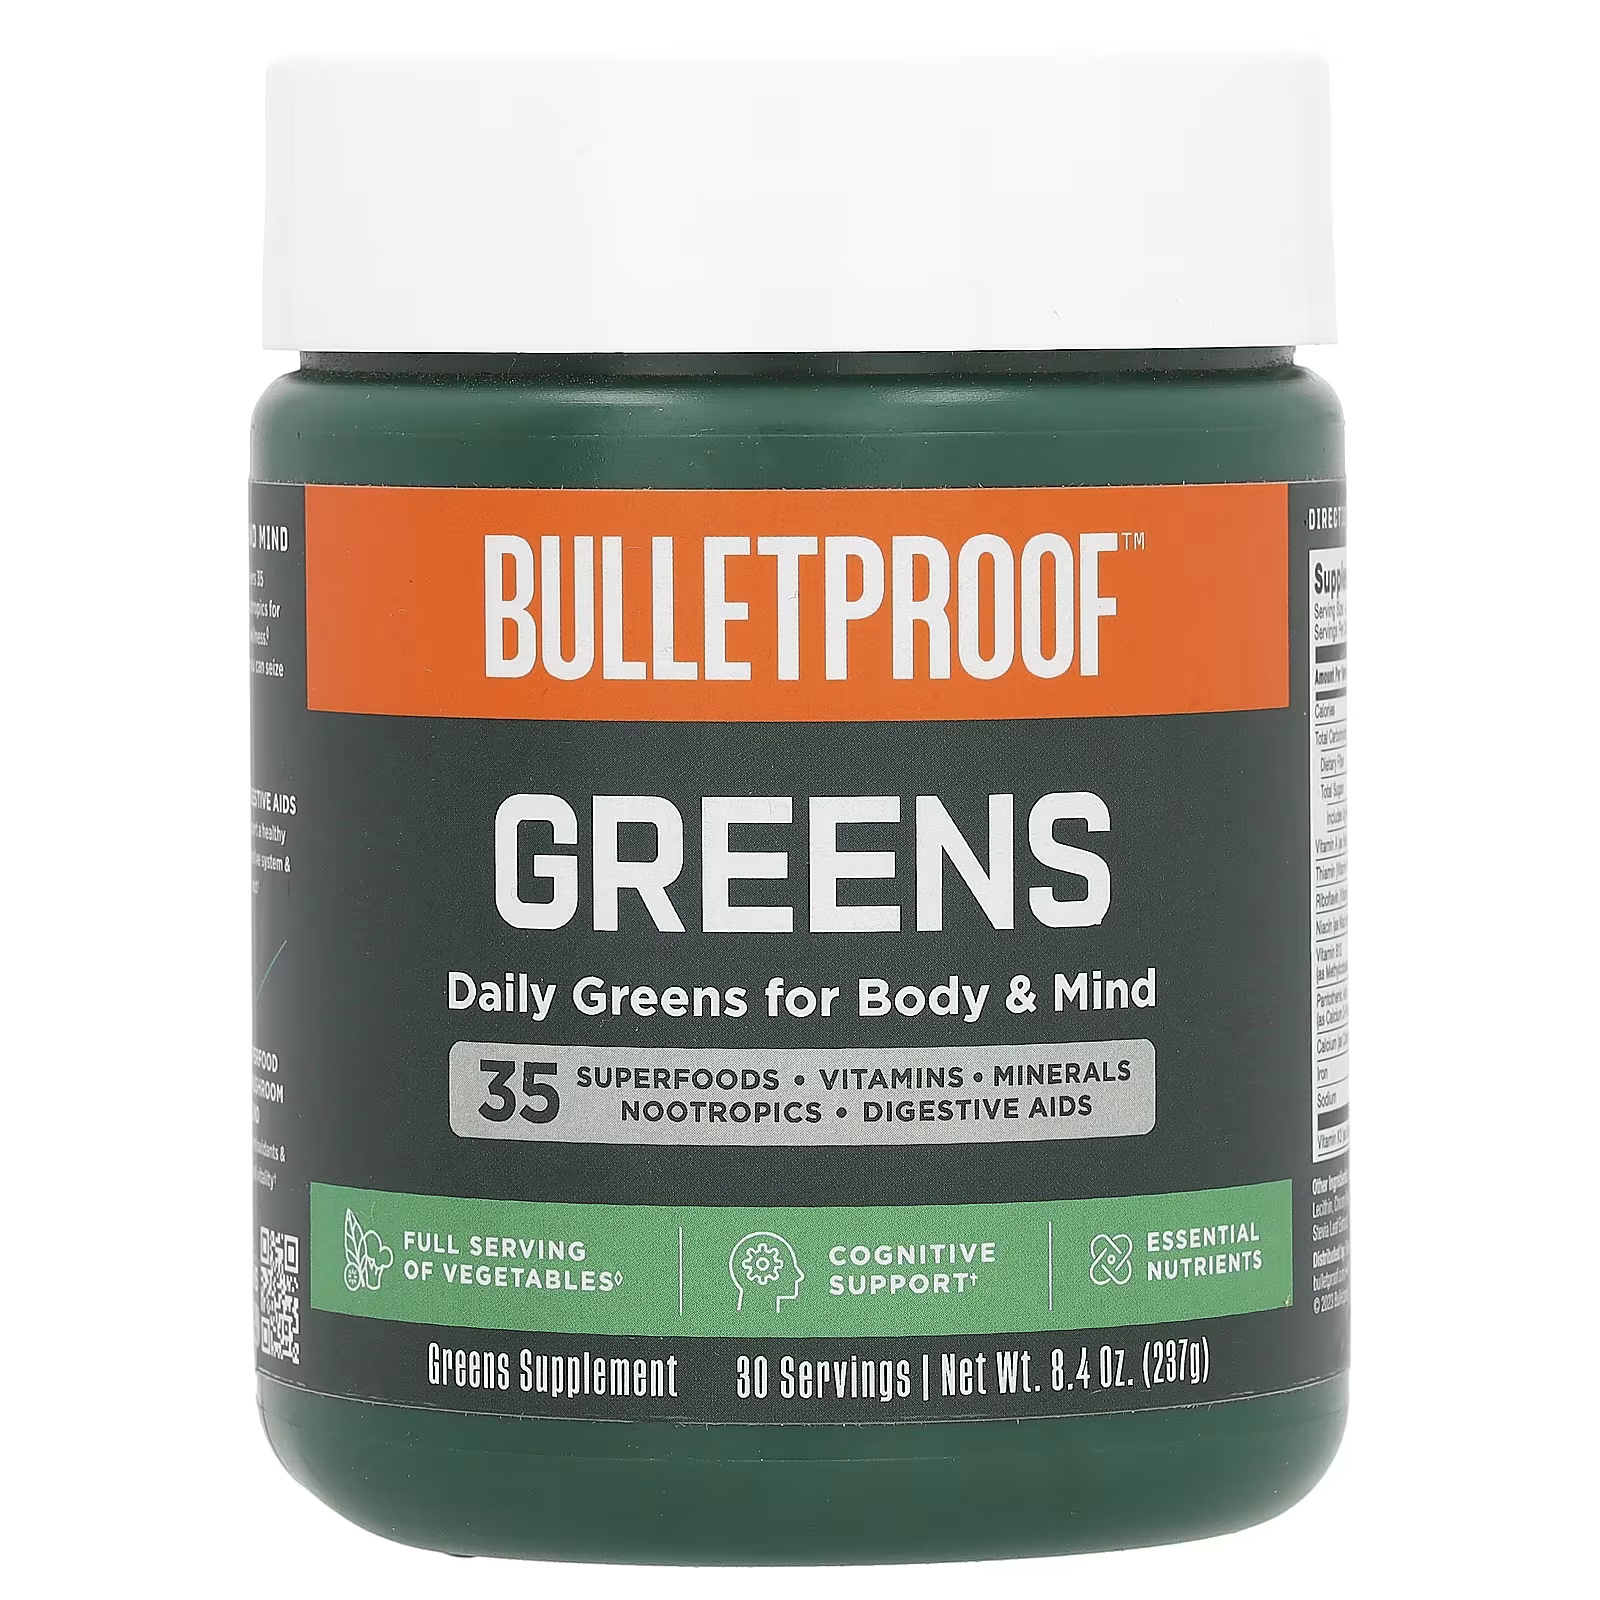 noxygen spermidine 60 капсул поддержка обмена веществ и когнитивных функций Пищевая добавка BulletProof Greens, 237 г